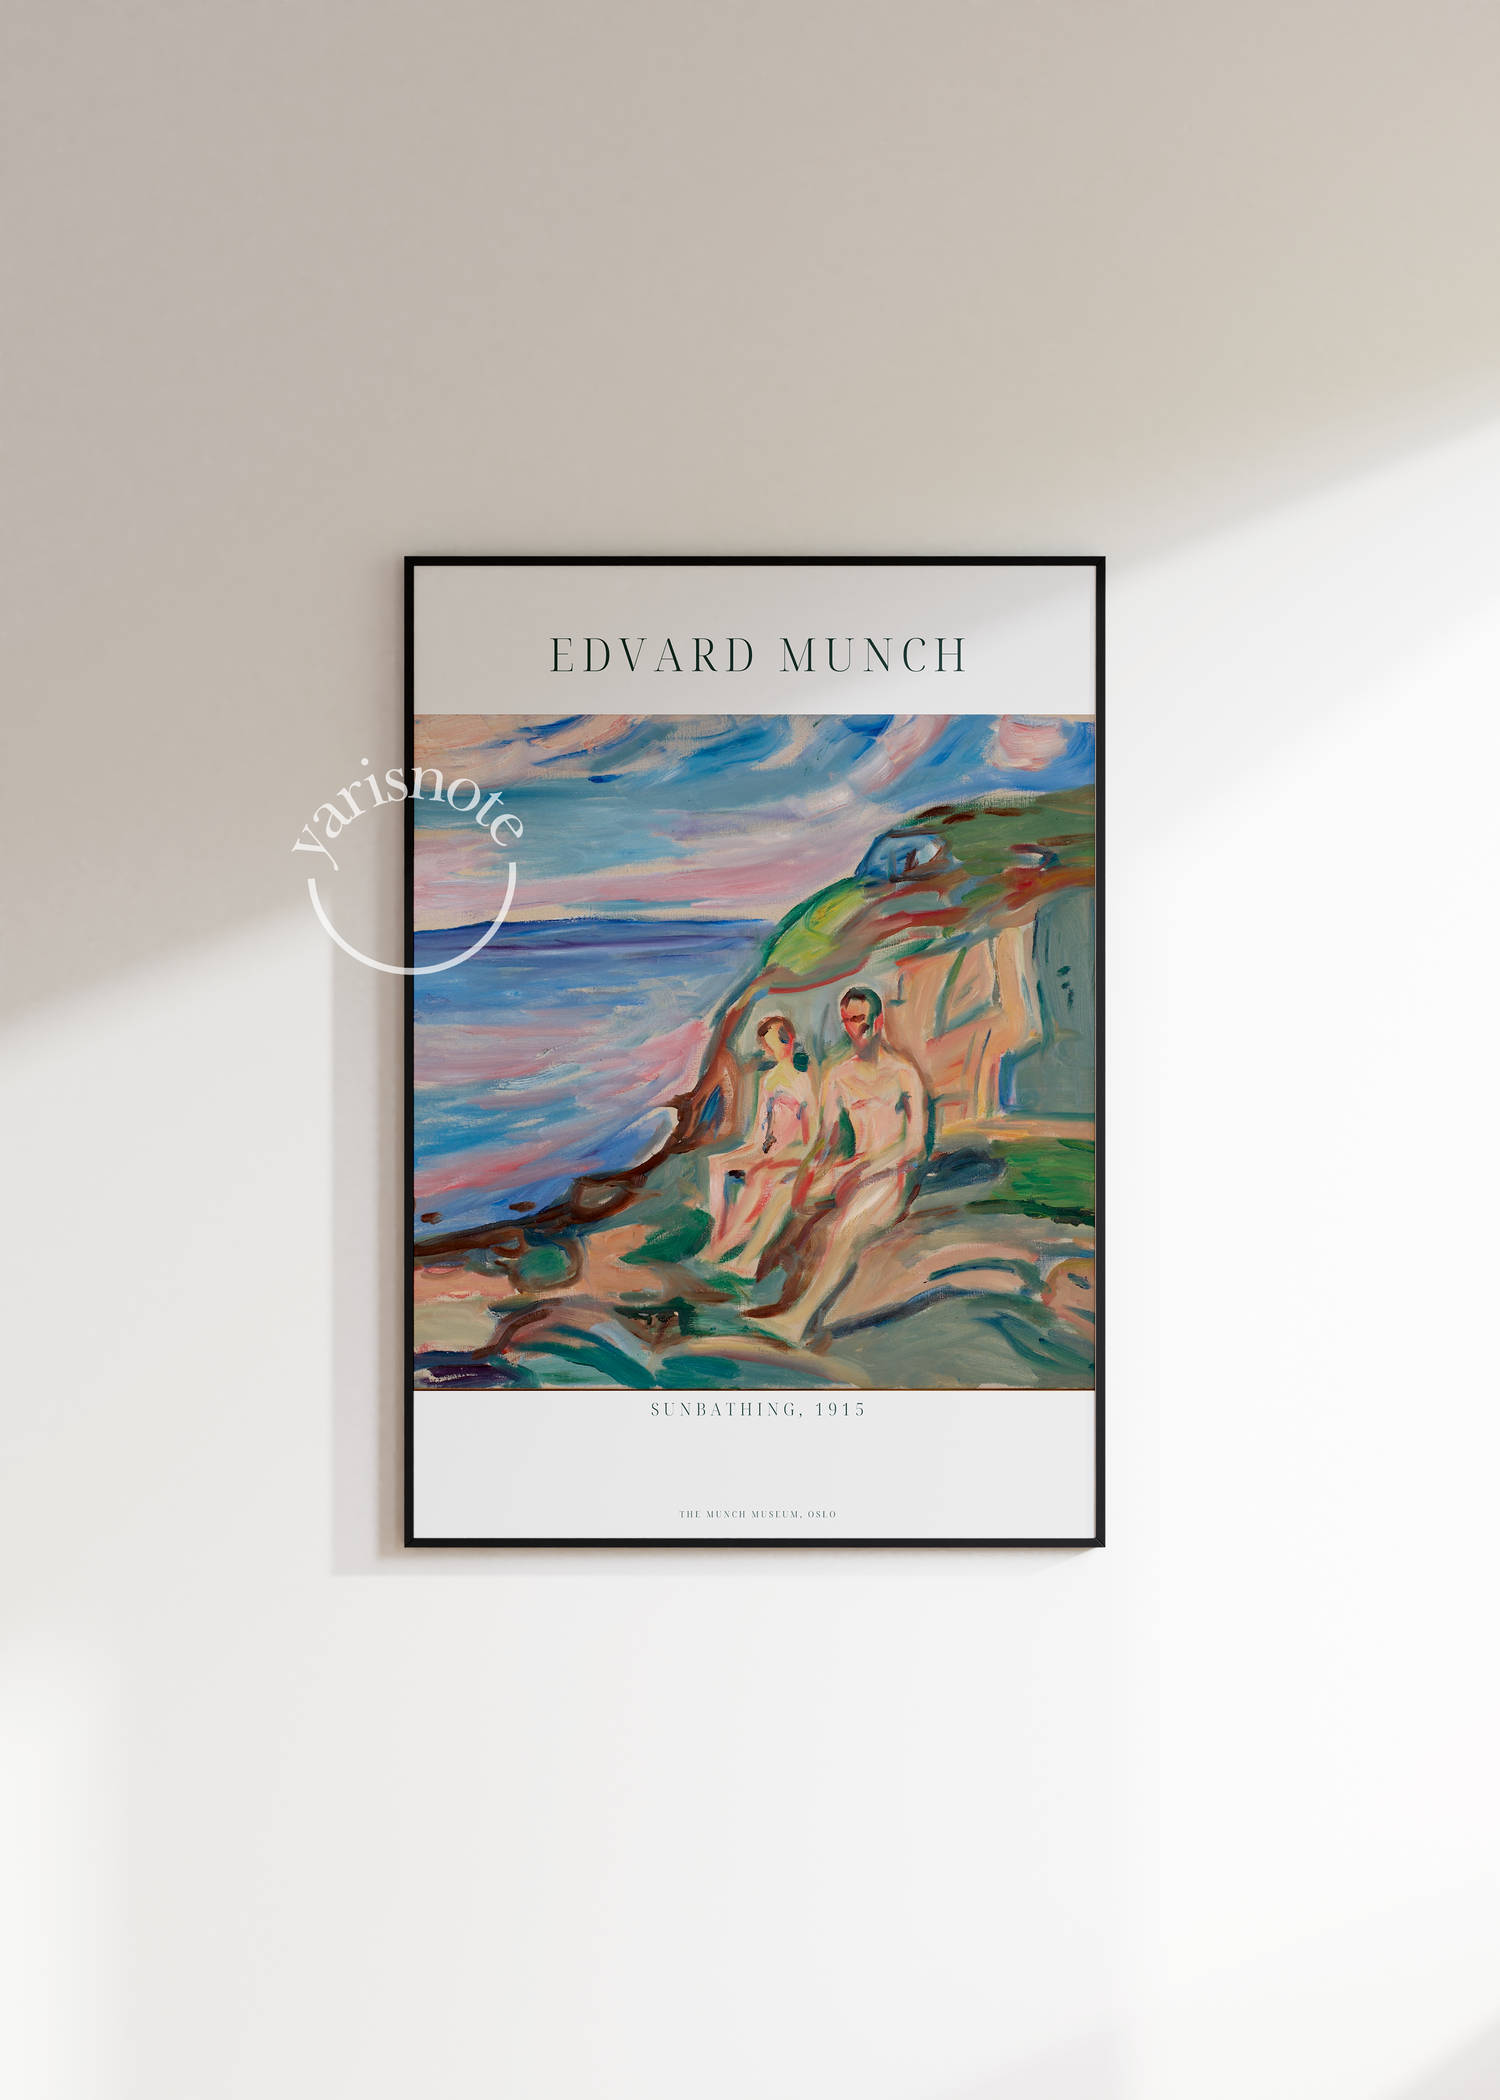 Edvard Munch Sunbathing Unframed Poster